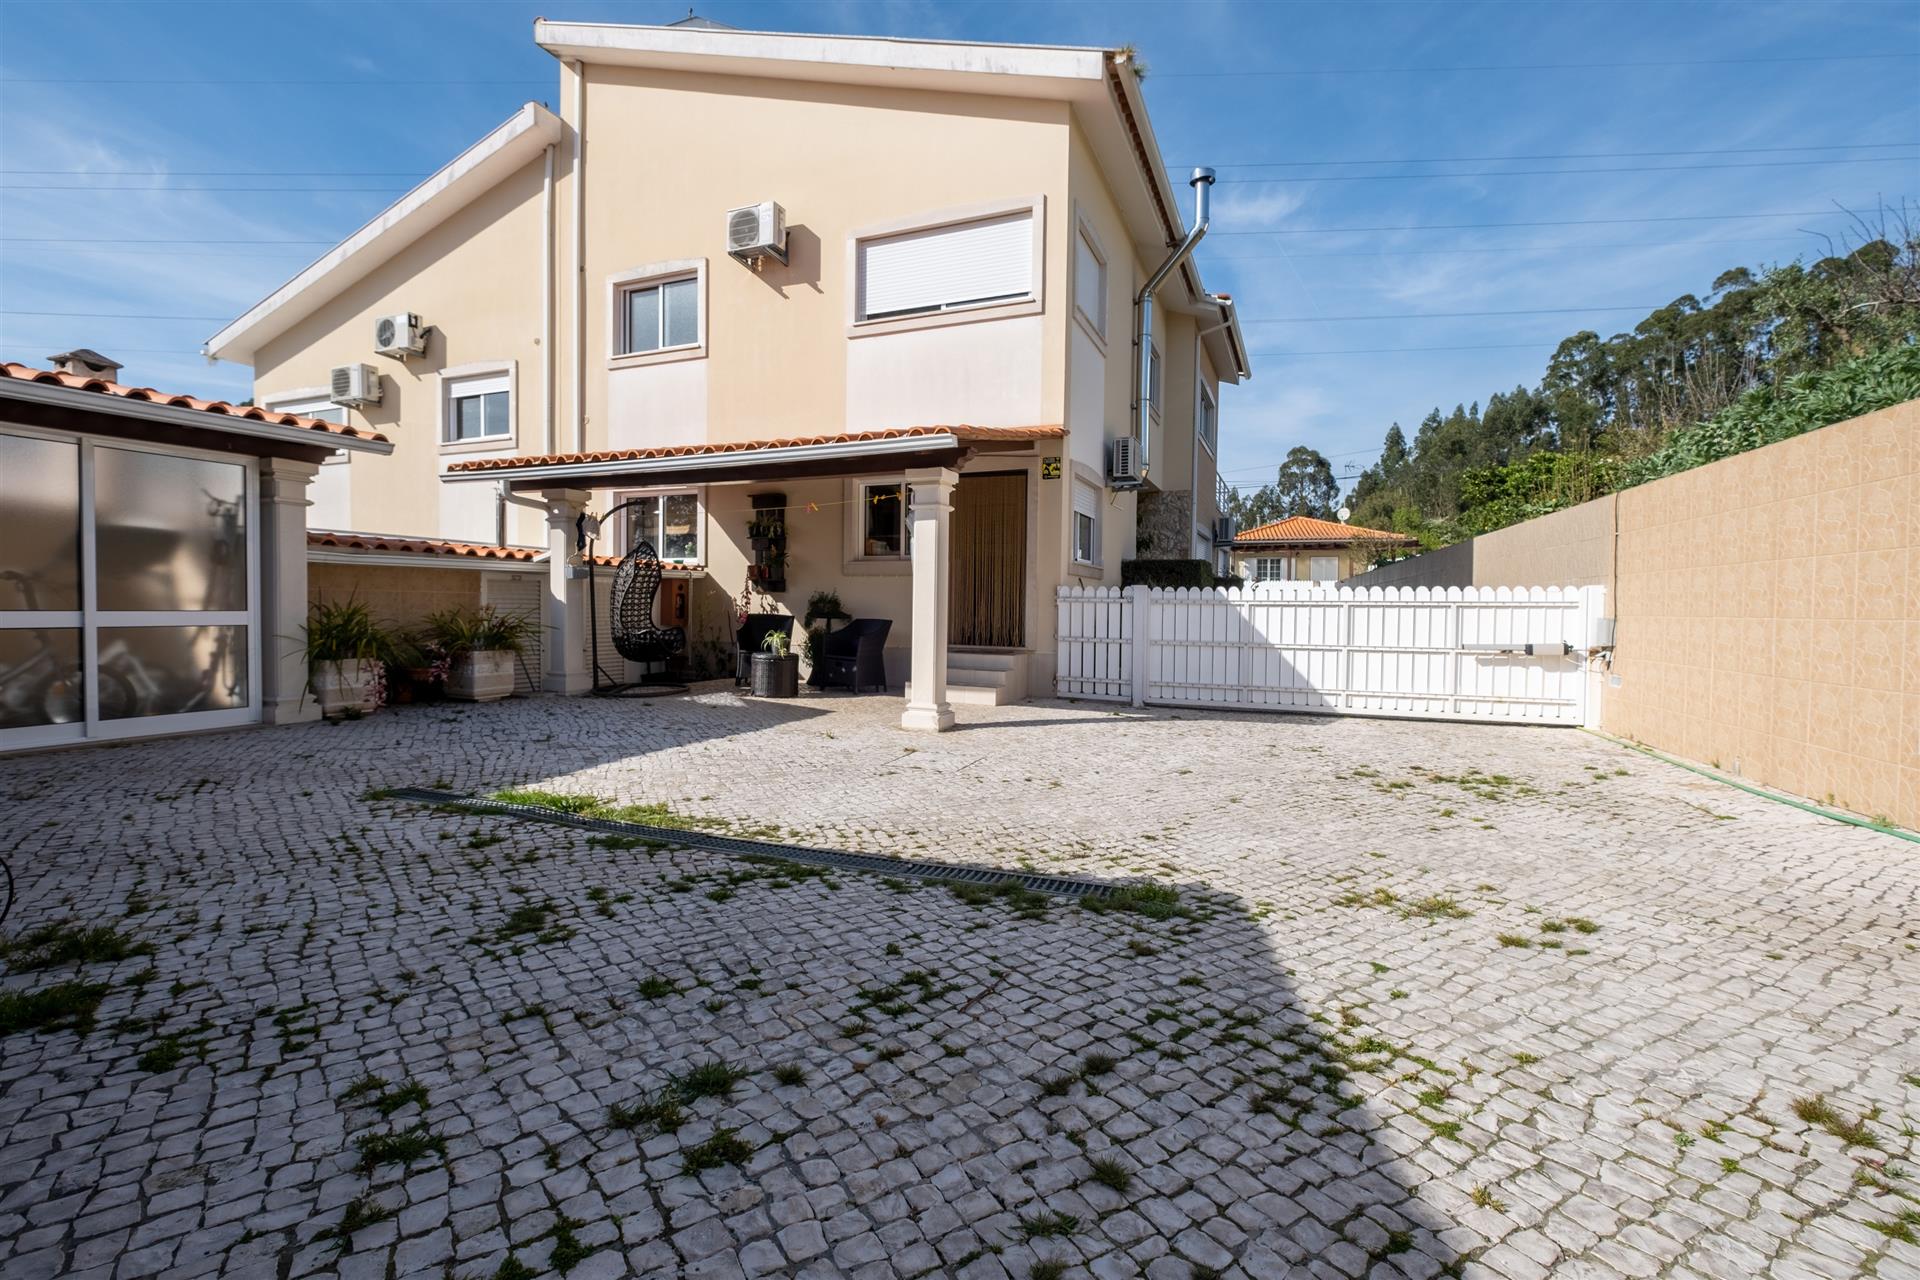 Fantastique maison jumelée de 5 chambres à vendre à Antanhol, Coimbra